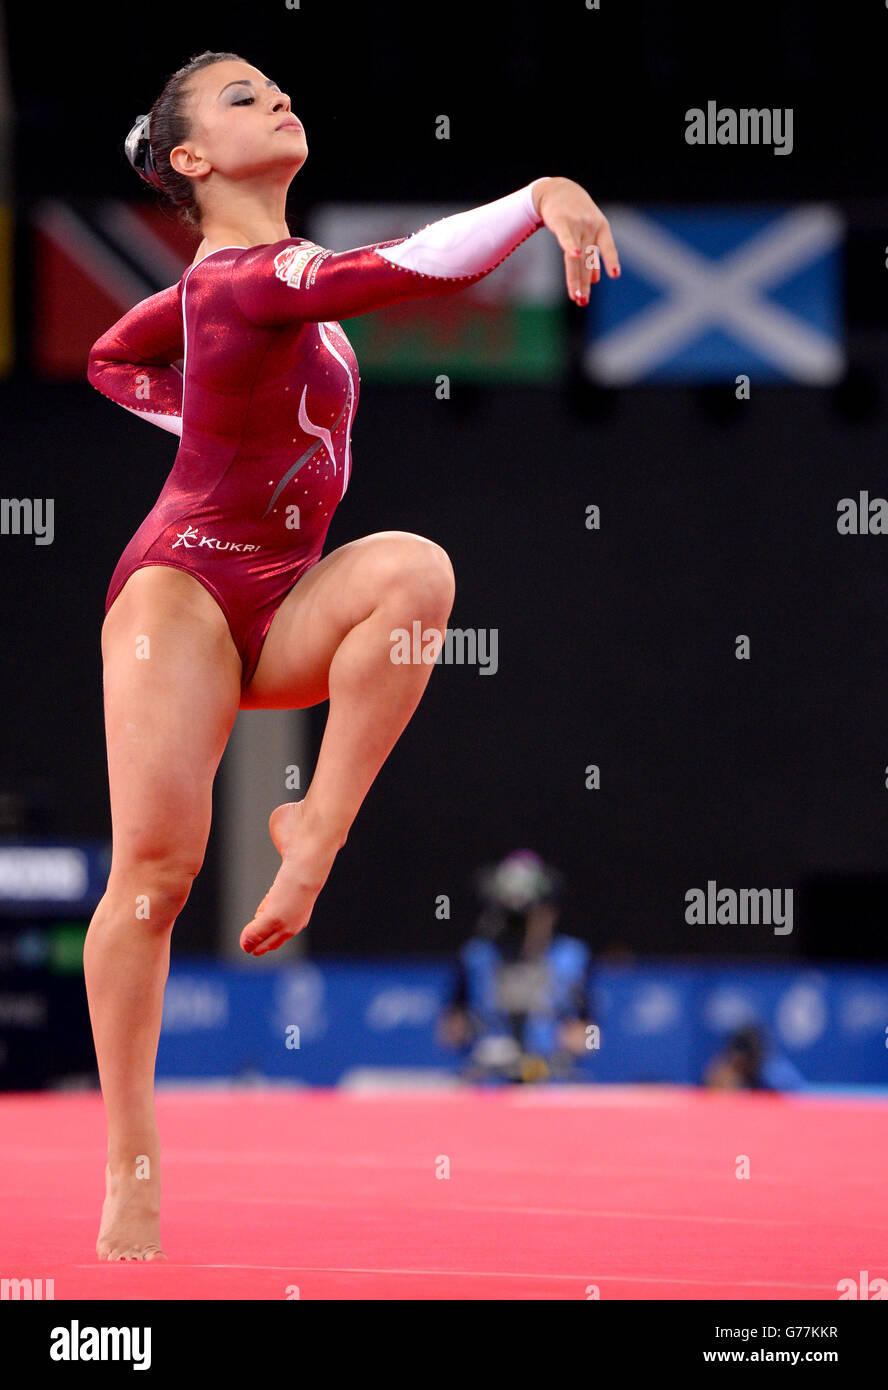 La Claudia Fragapane d'Angleterre participe à la finale de gymnastique artistique féminine à SSE Hydro, lors des Jeux du Commonwealth de 2014 à Glasgow. Banque D'Images